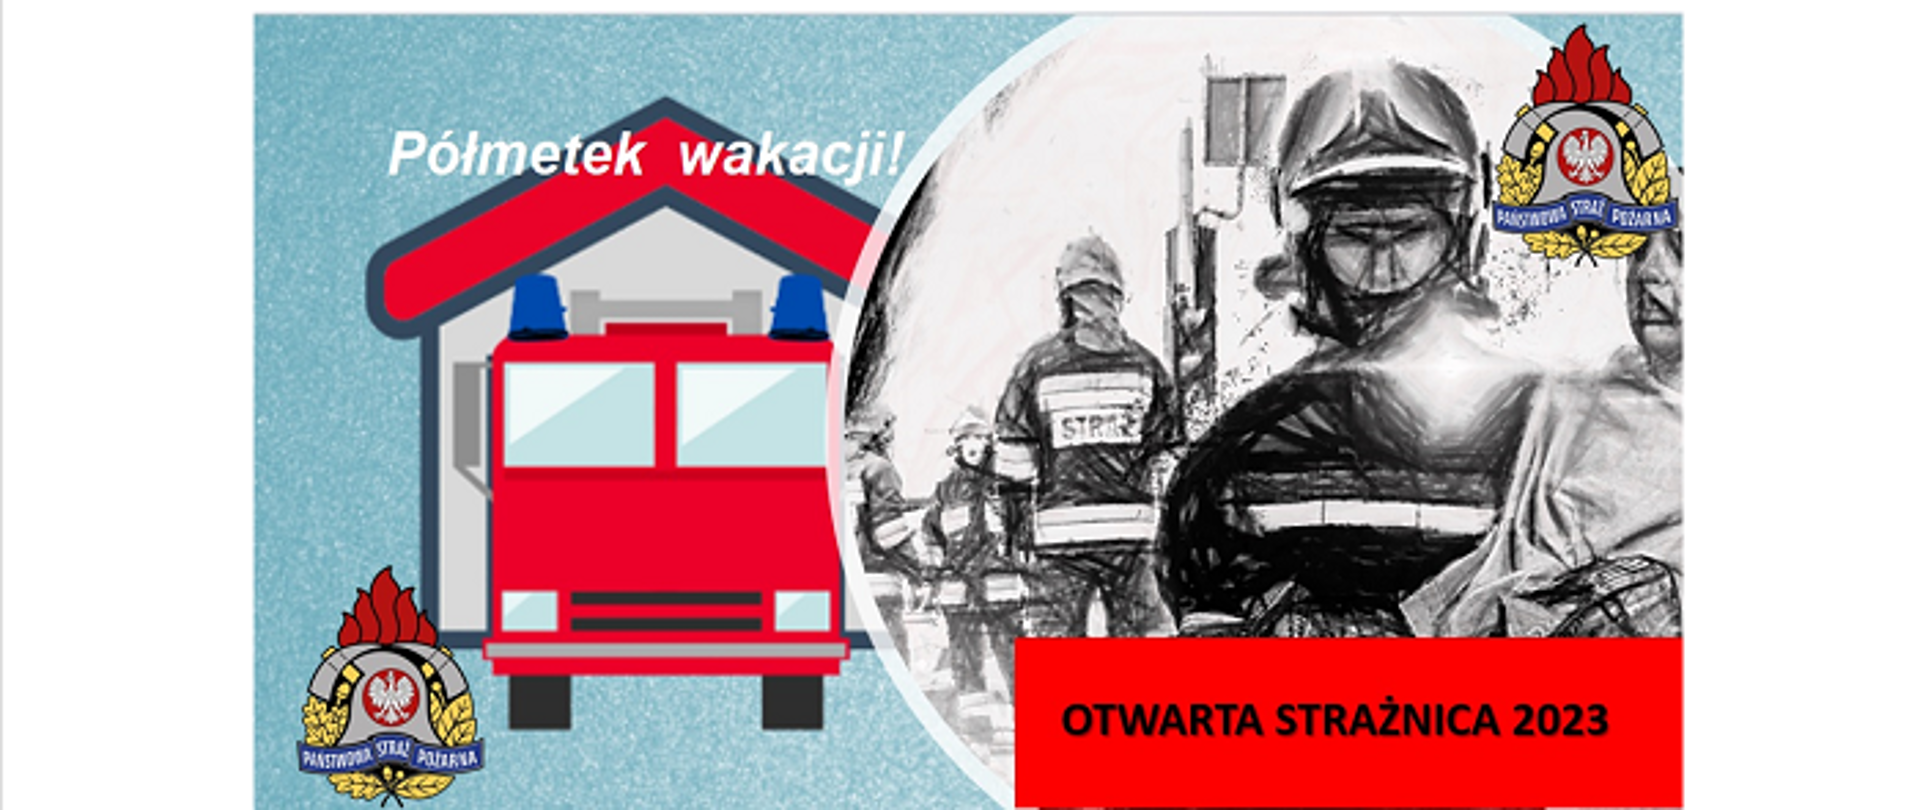 Infografika obrazująca szkic samochodu straży pożarnej oraz naszkicowanych strażaków. Na górze obrazu napis Półmetek wakacji a na dole strony Otwarta strażnica 2023. Zdjęcie opatrzone w logo PSP.